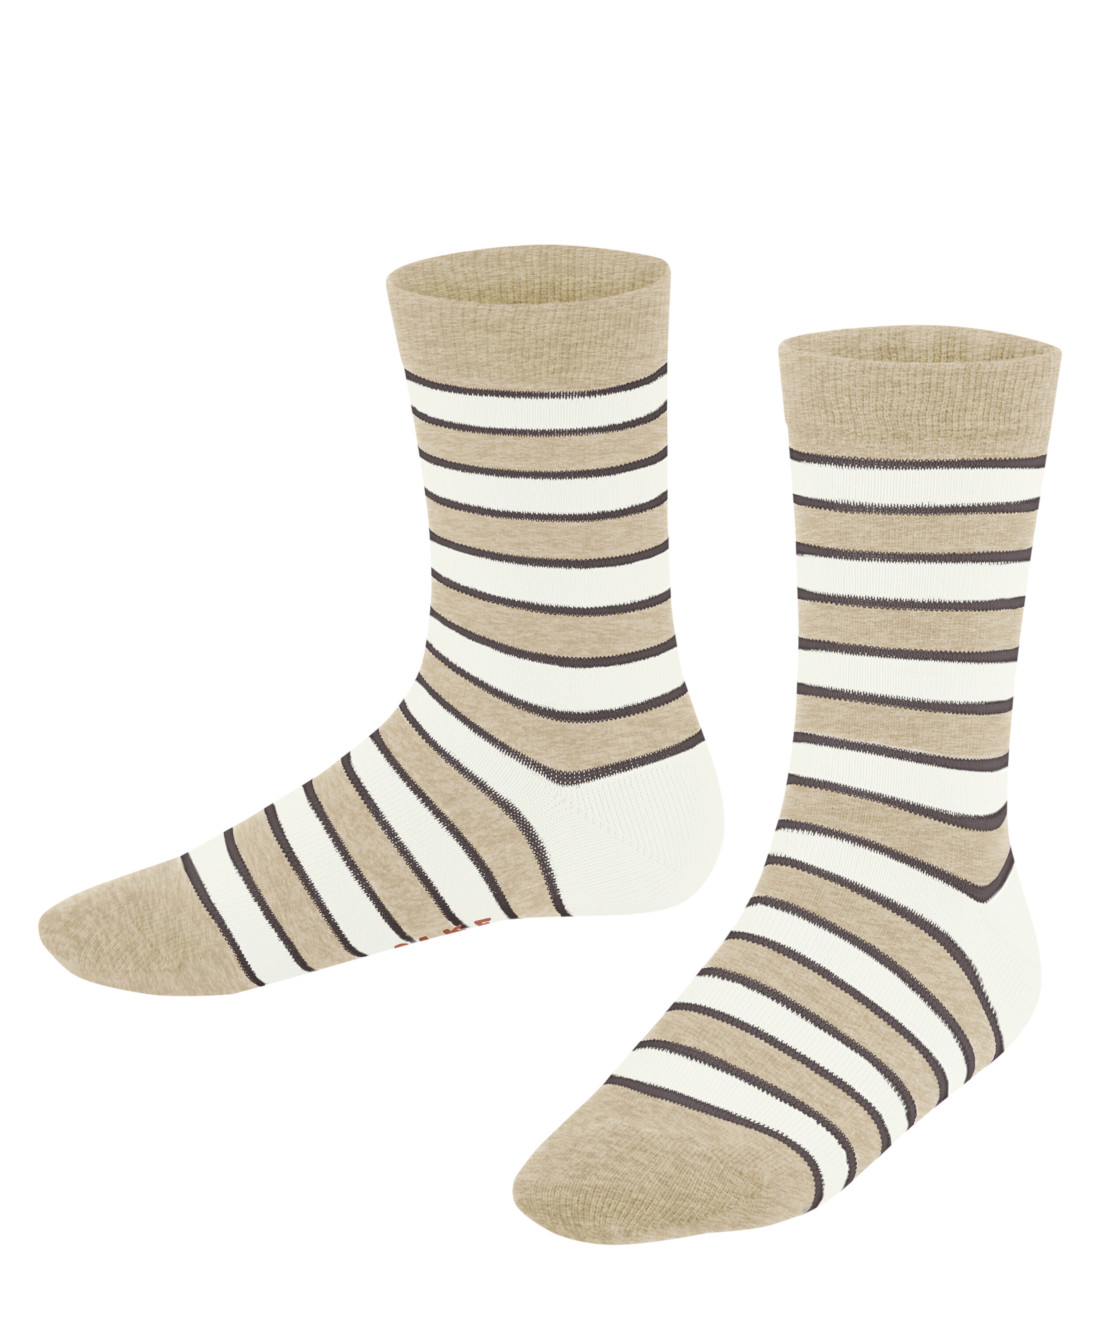 2er Pack Falke Simple Stripes Kinder Socken